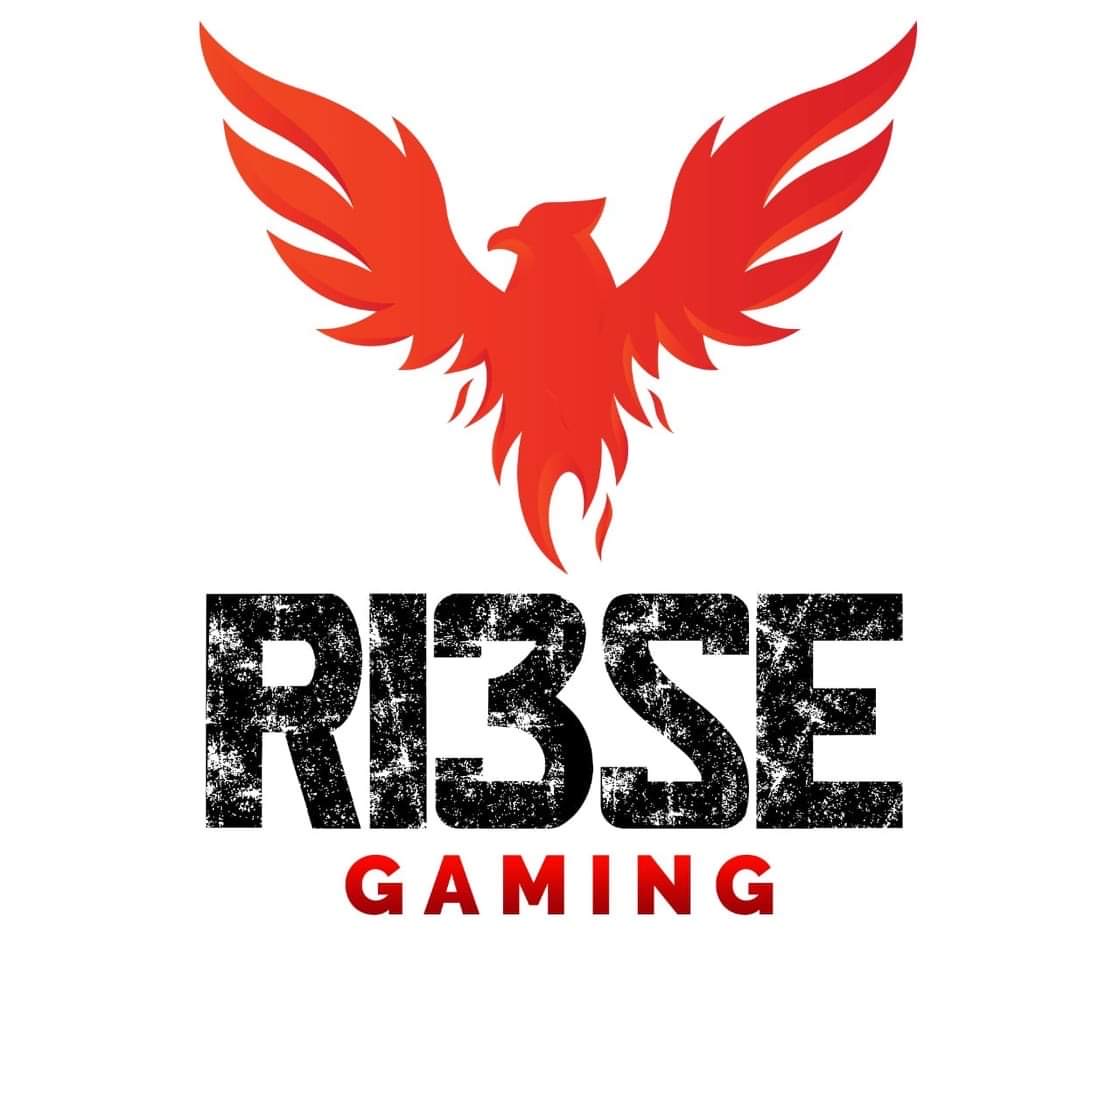 RI3sE Gaming